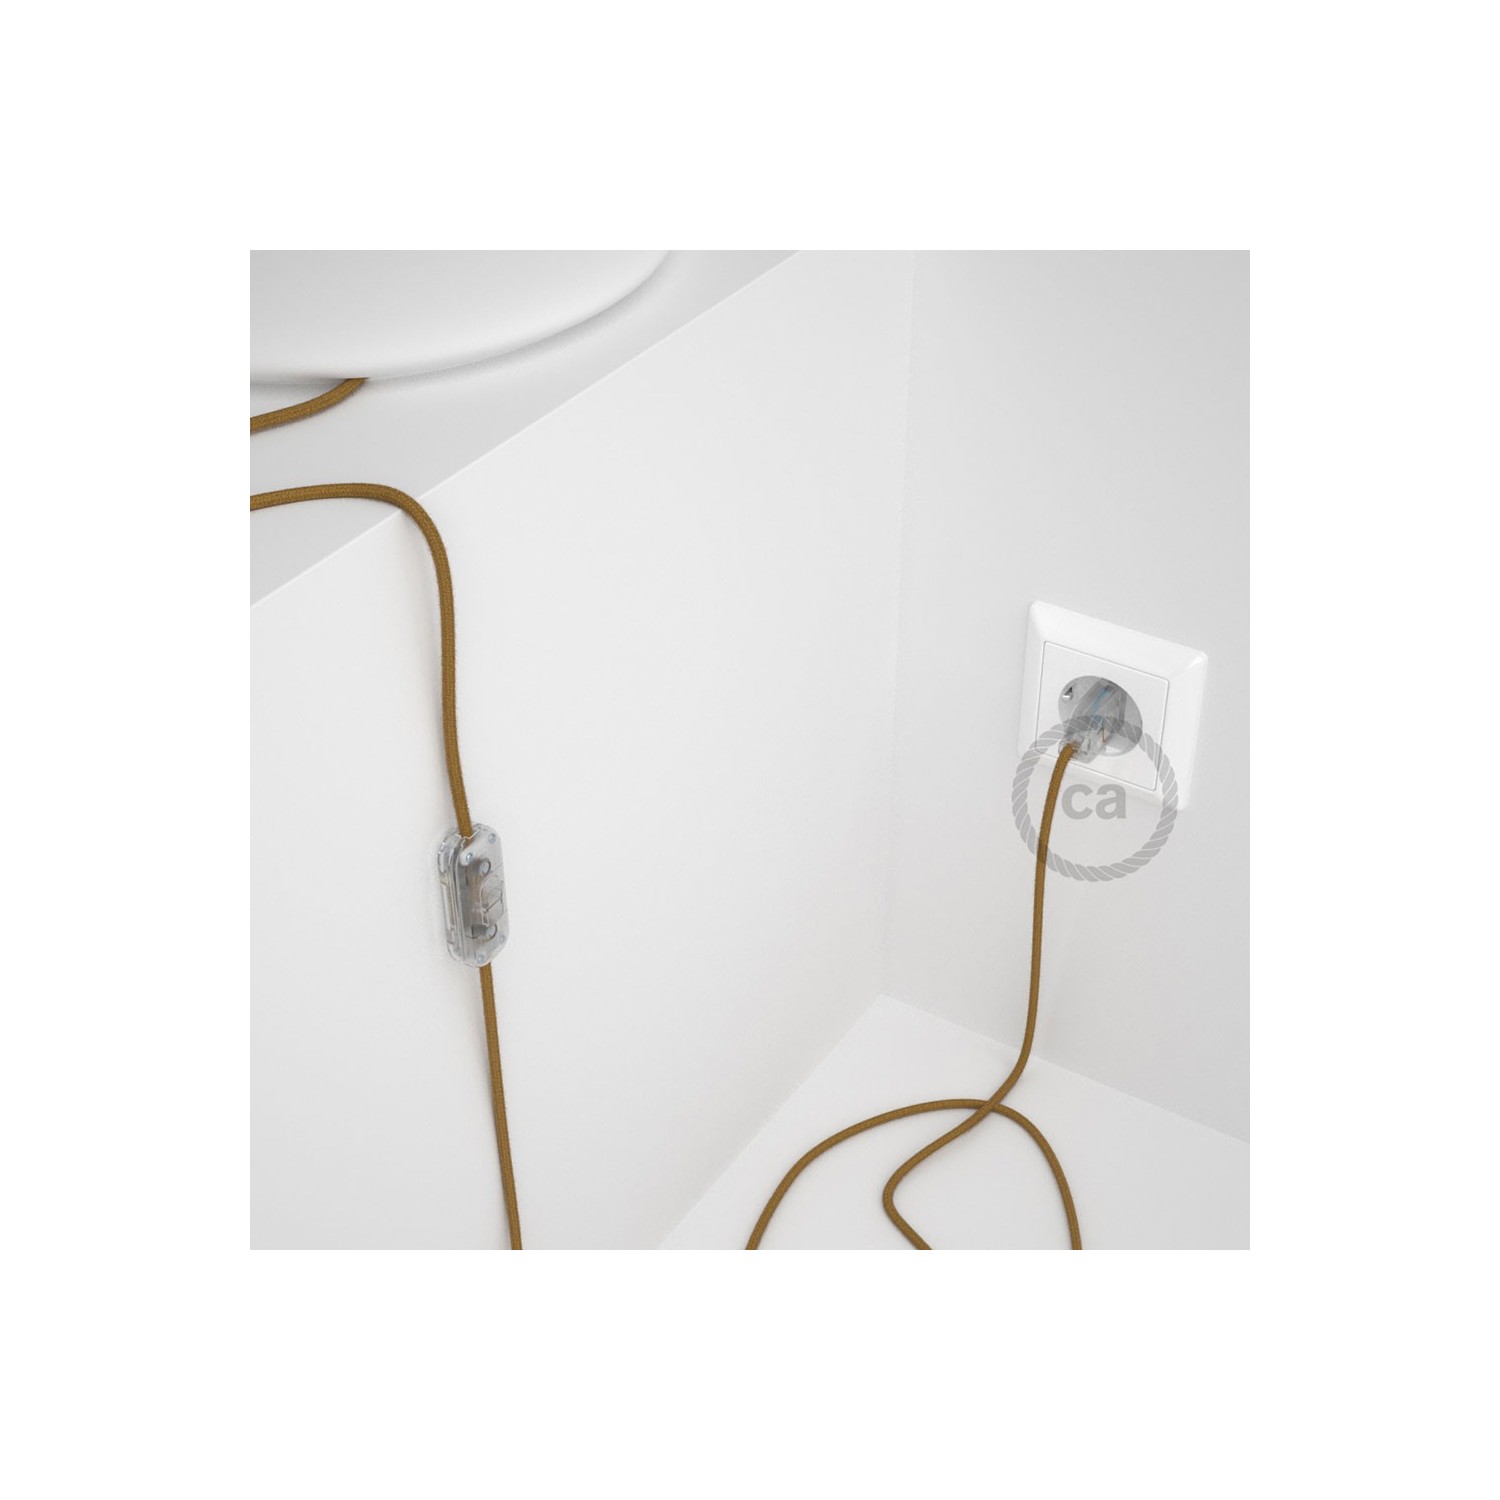 Cableado para lámpara, cable RC31 Algodón Miel Dorado 1,8m. Elige tu el color de la clavija y del interruptor!